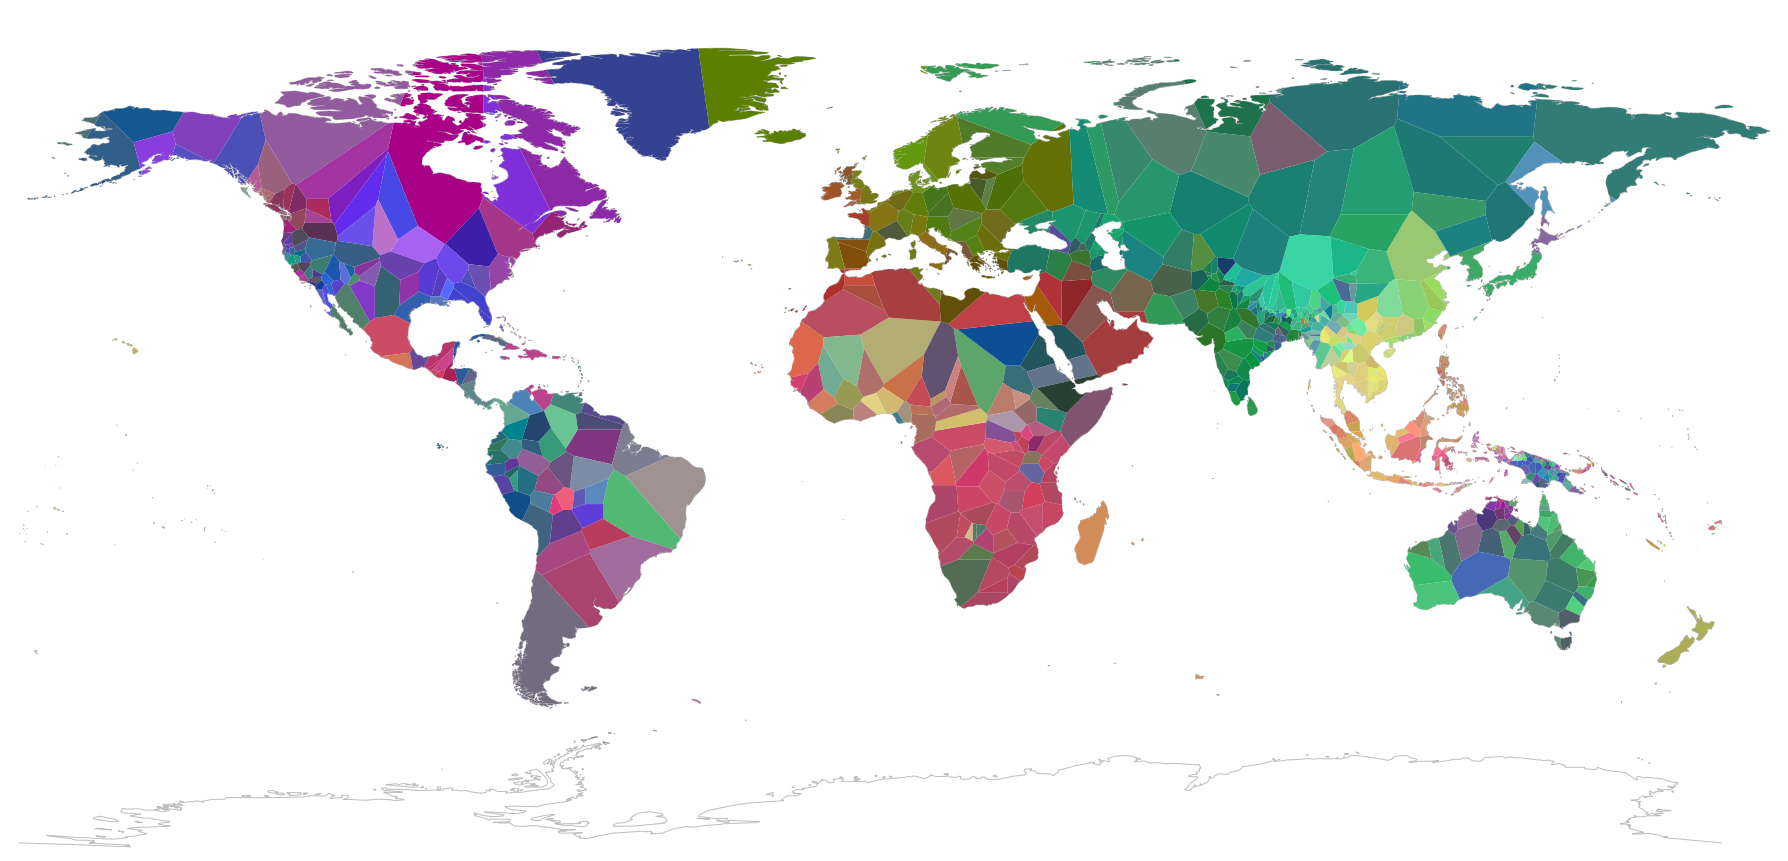 Représentation de la correspondance morphosyntaxique entre les langues du monde